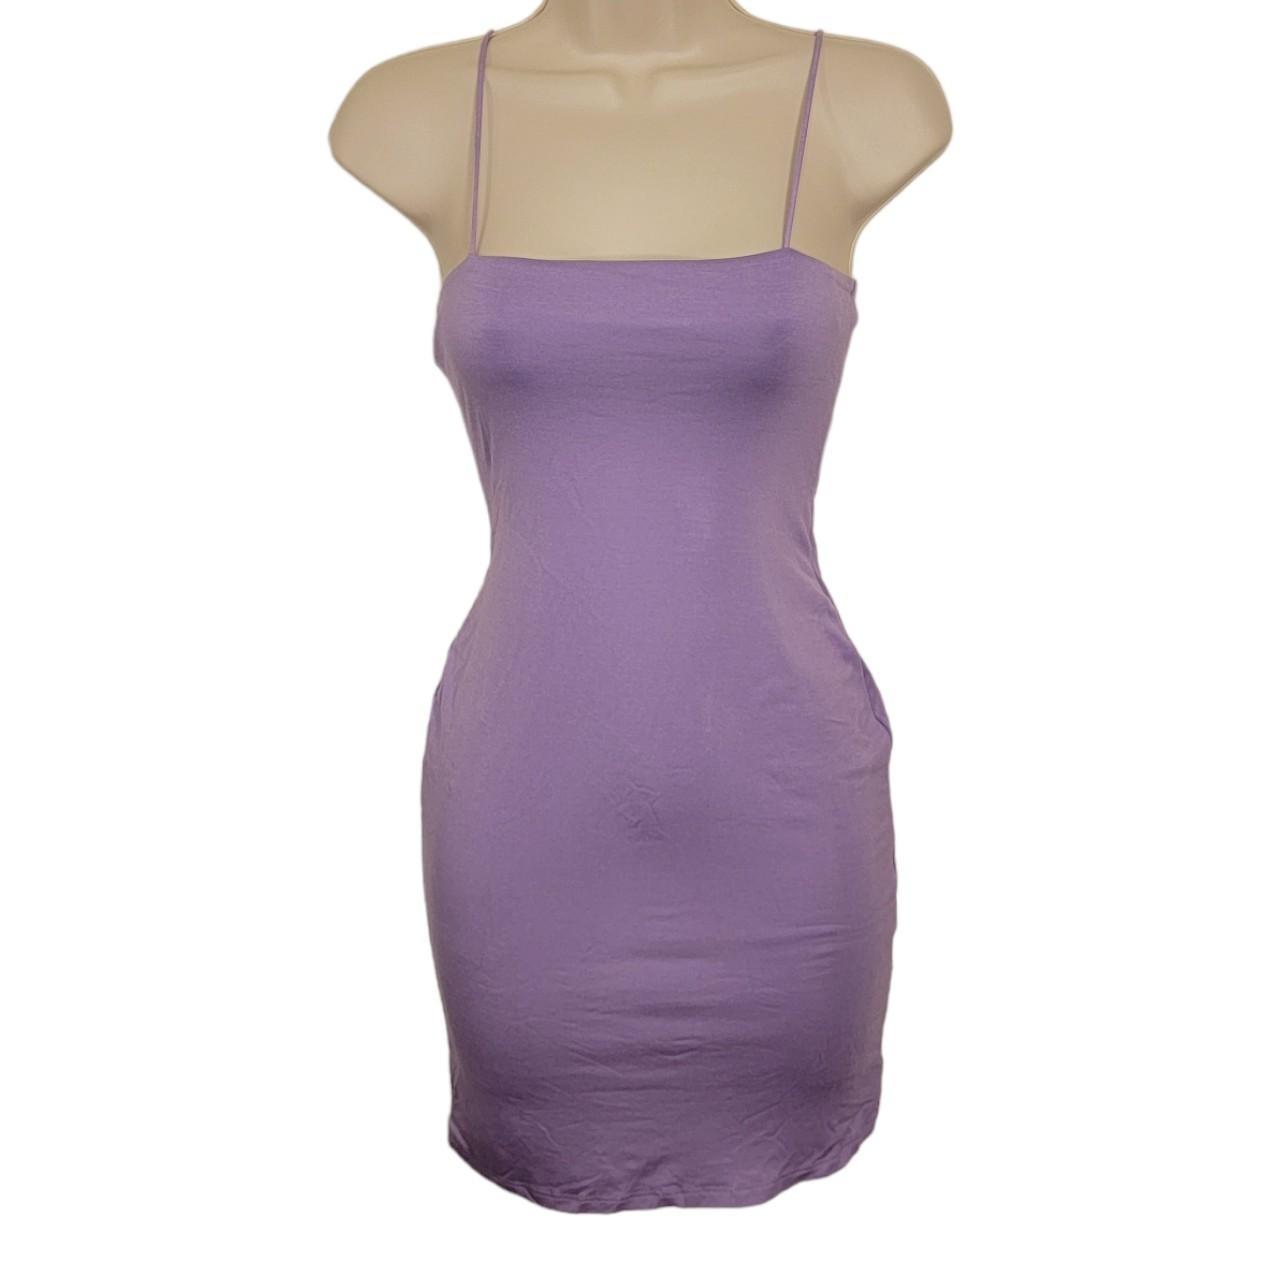 Kiki Mini Dress 💜Stetchy shoulder straps 💜Bodycon... - Depop